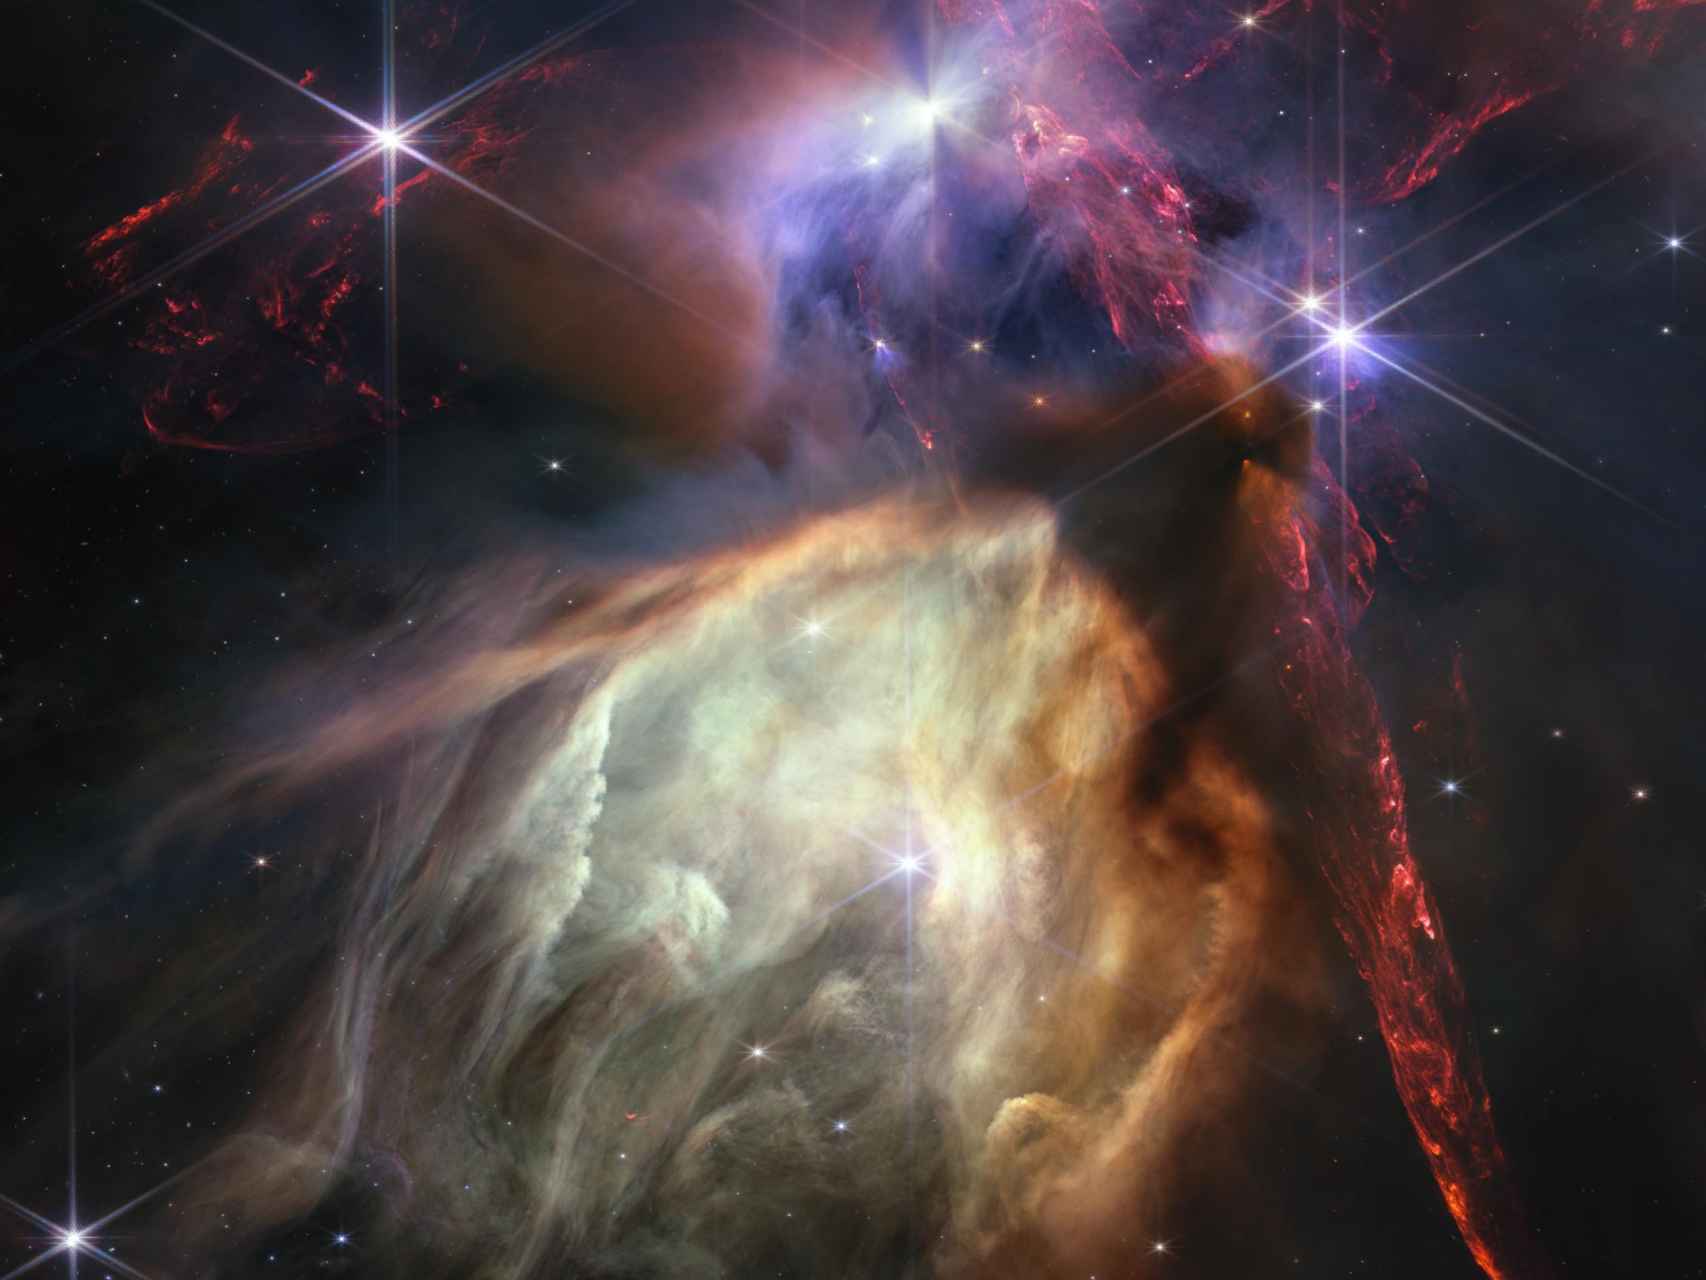 Imagen sin editar del Webb, que muestra el nacimiento de estrellas como nunca antes.